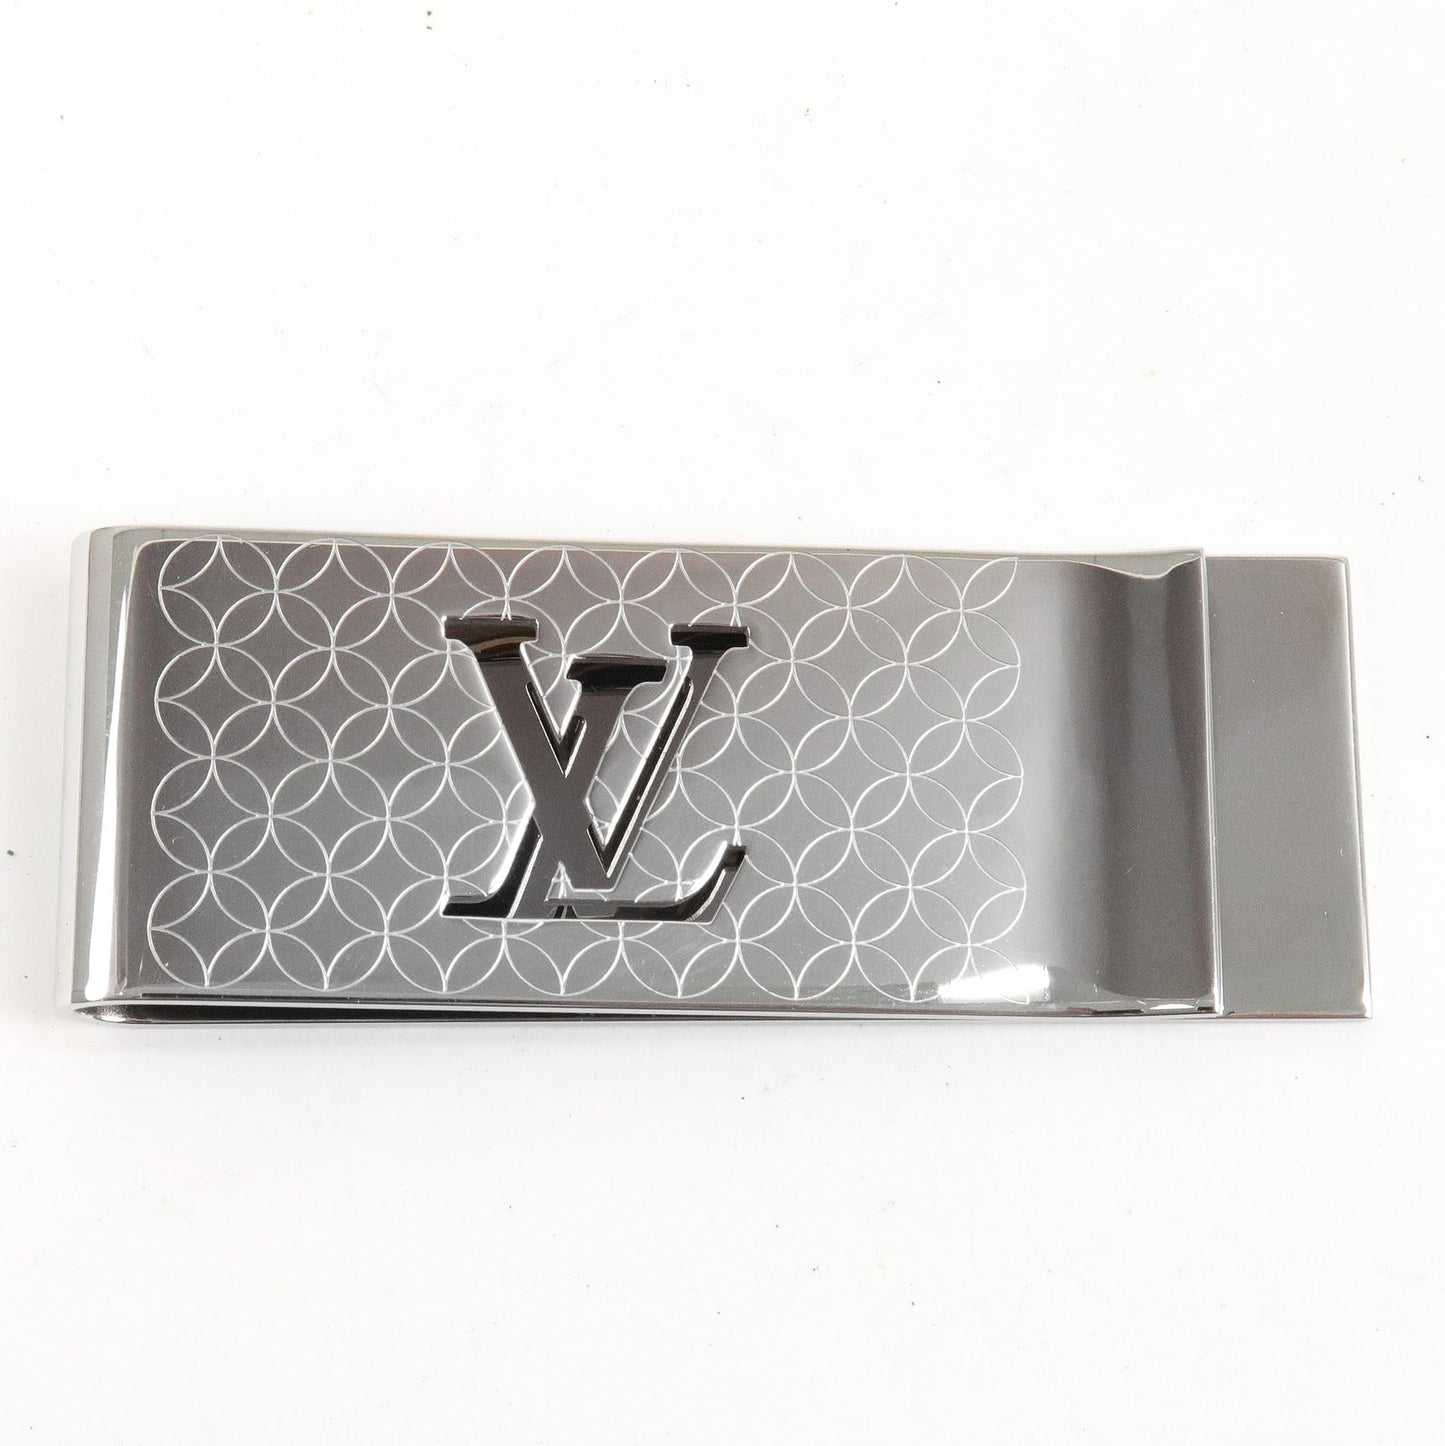 Louis Vuitton tie clip pansclavat champs-elysées M65042 0.8 x 6.1